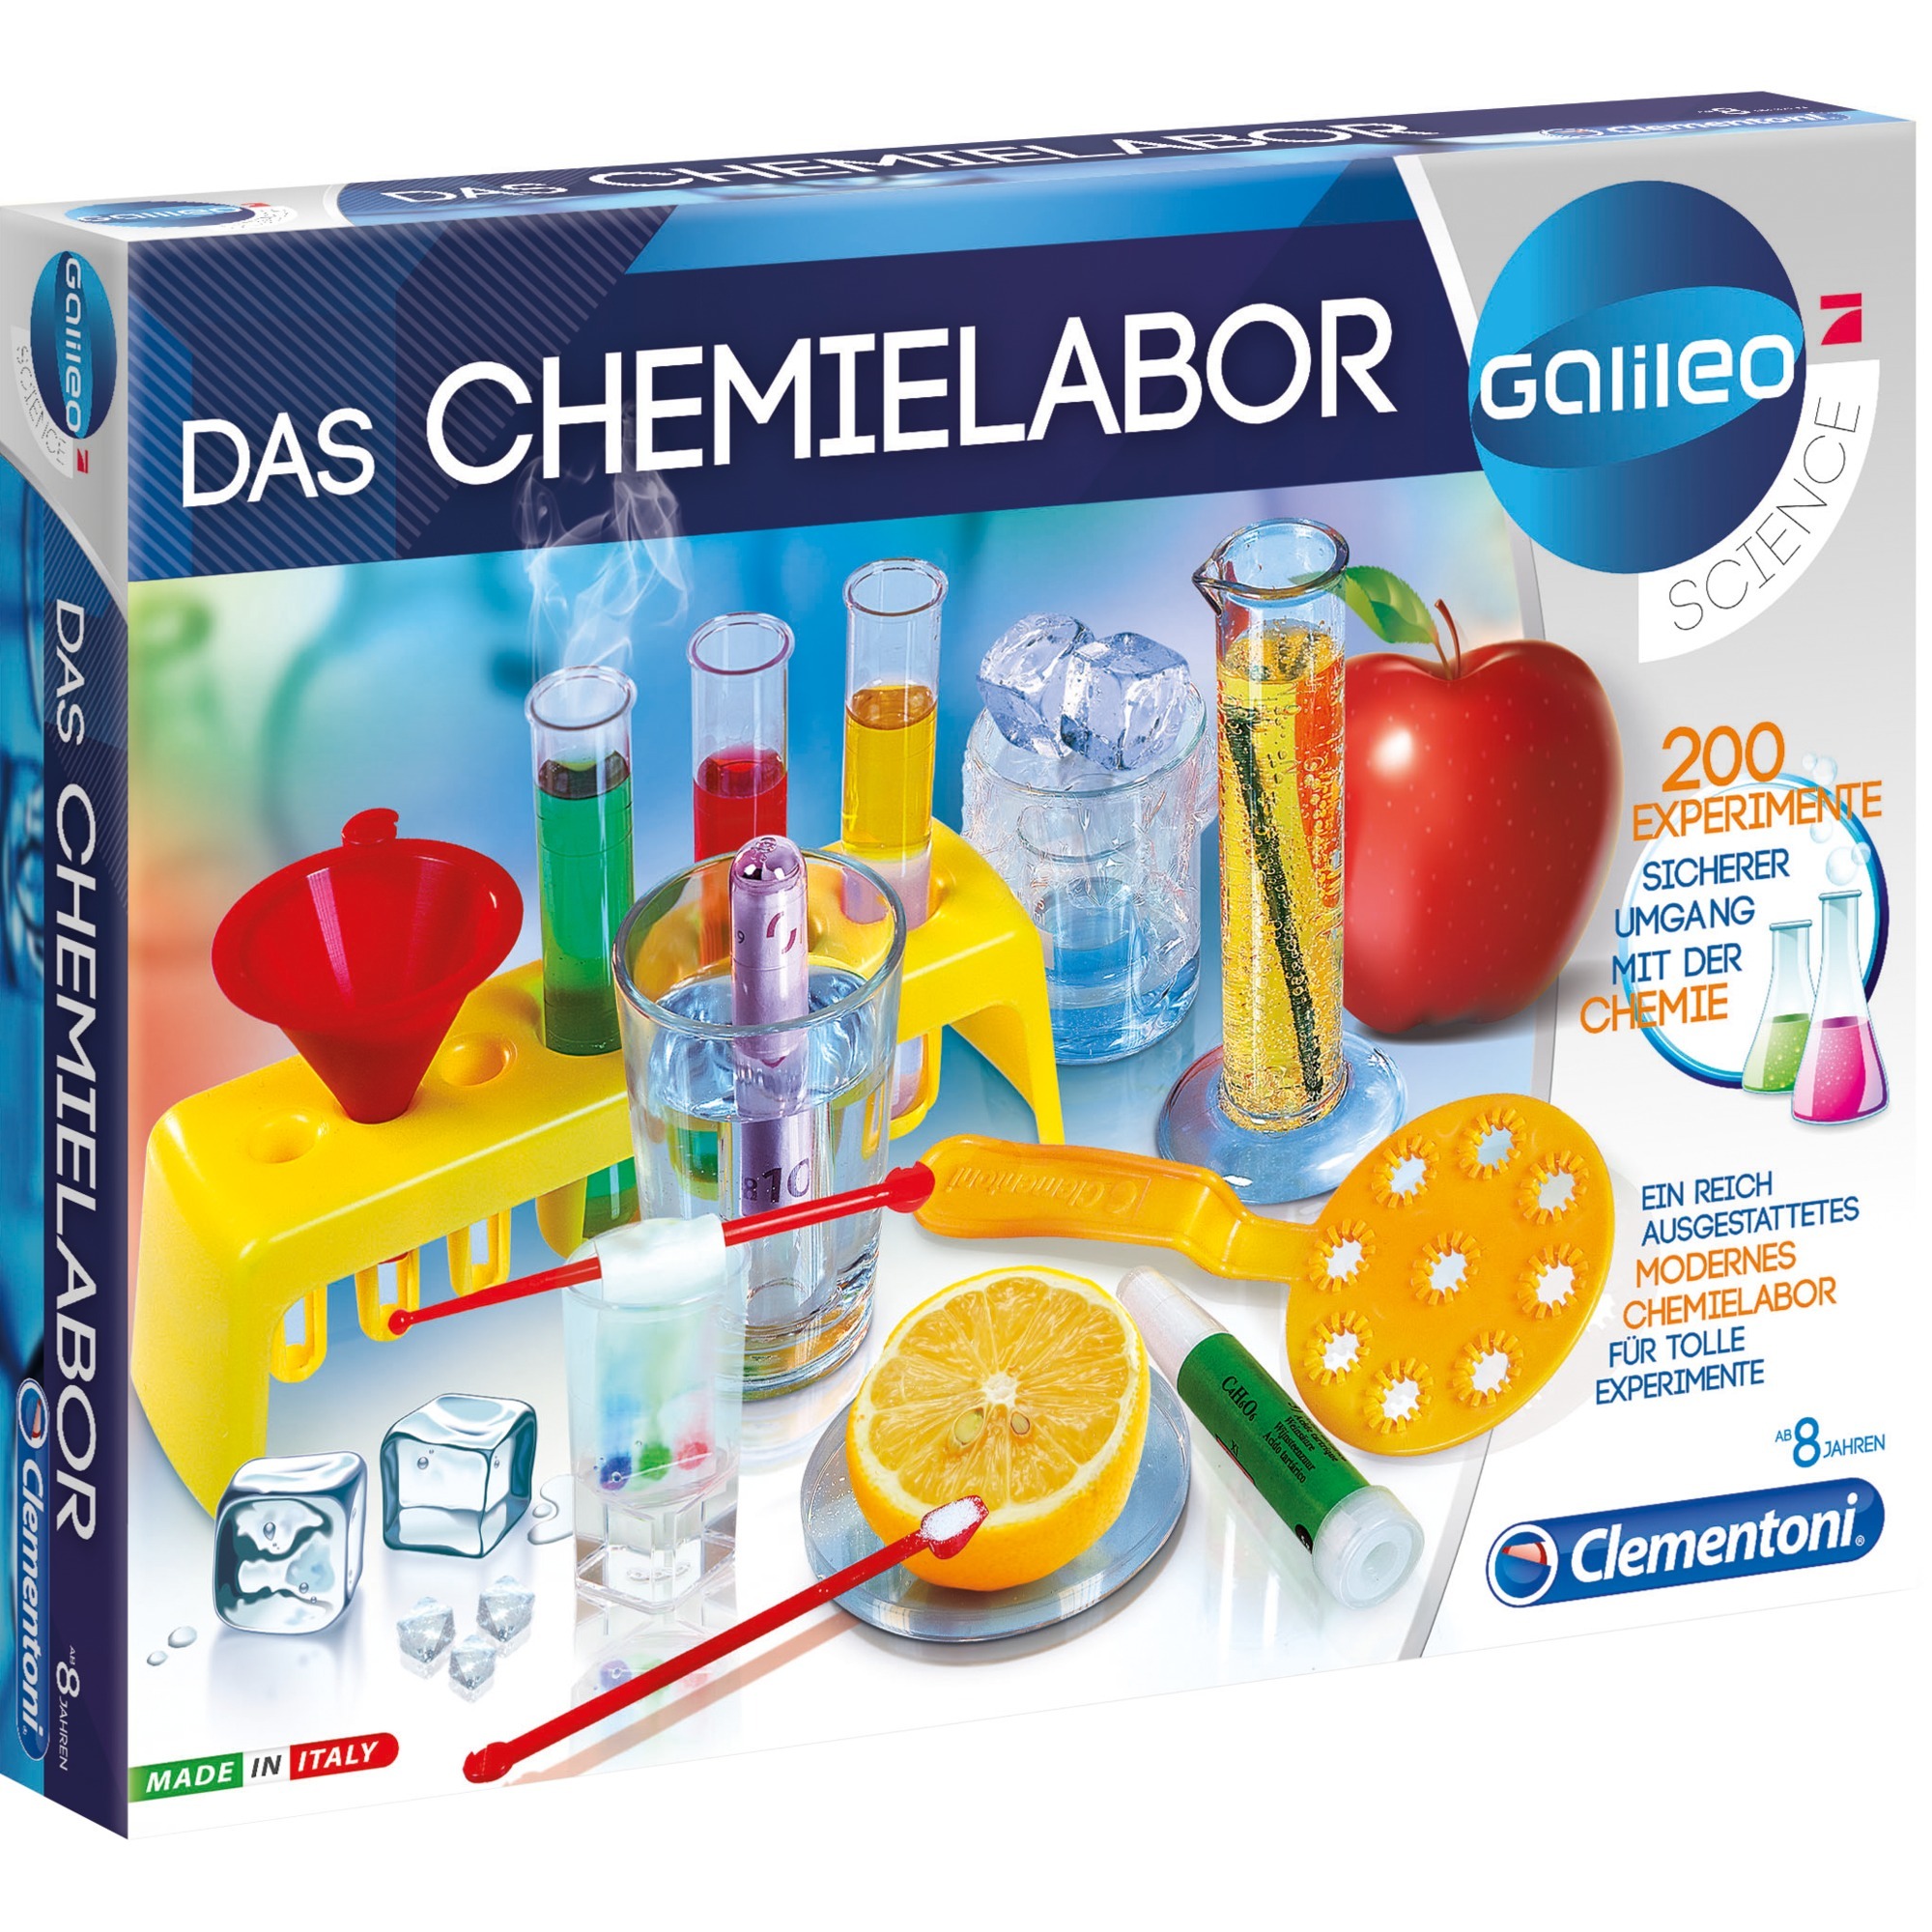 Image of Alternate - Das Chemielabor, Experimentierkasten online einkaufen bei Alternate